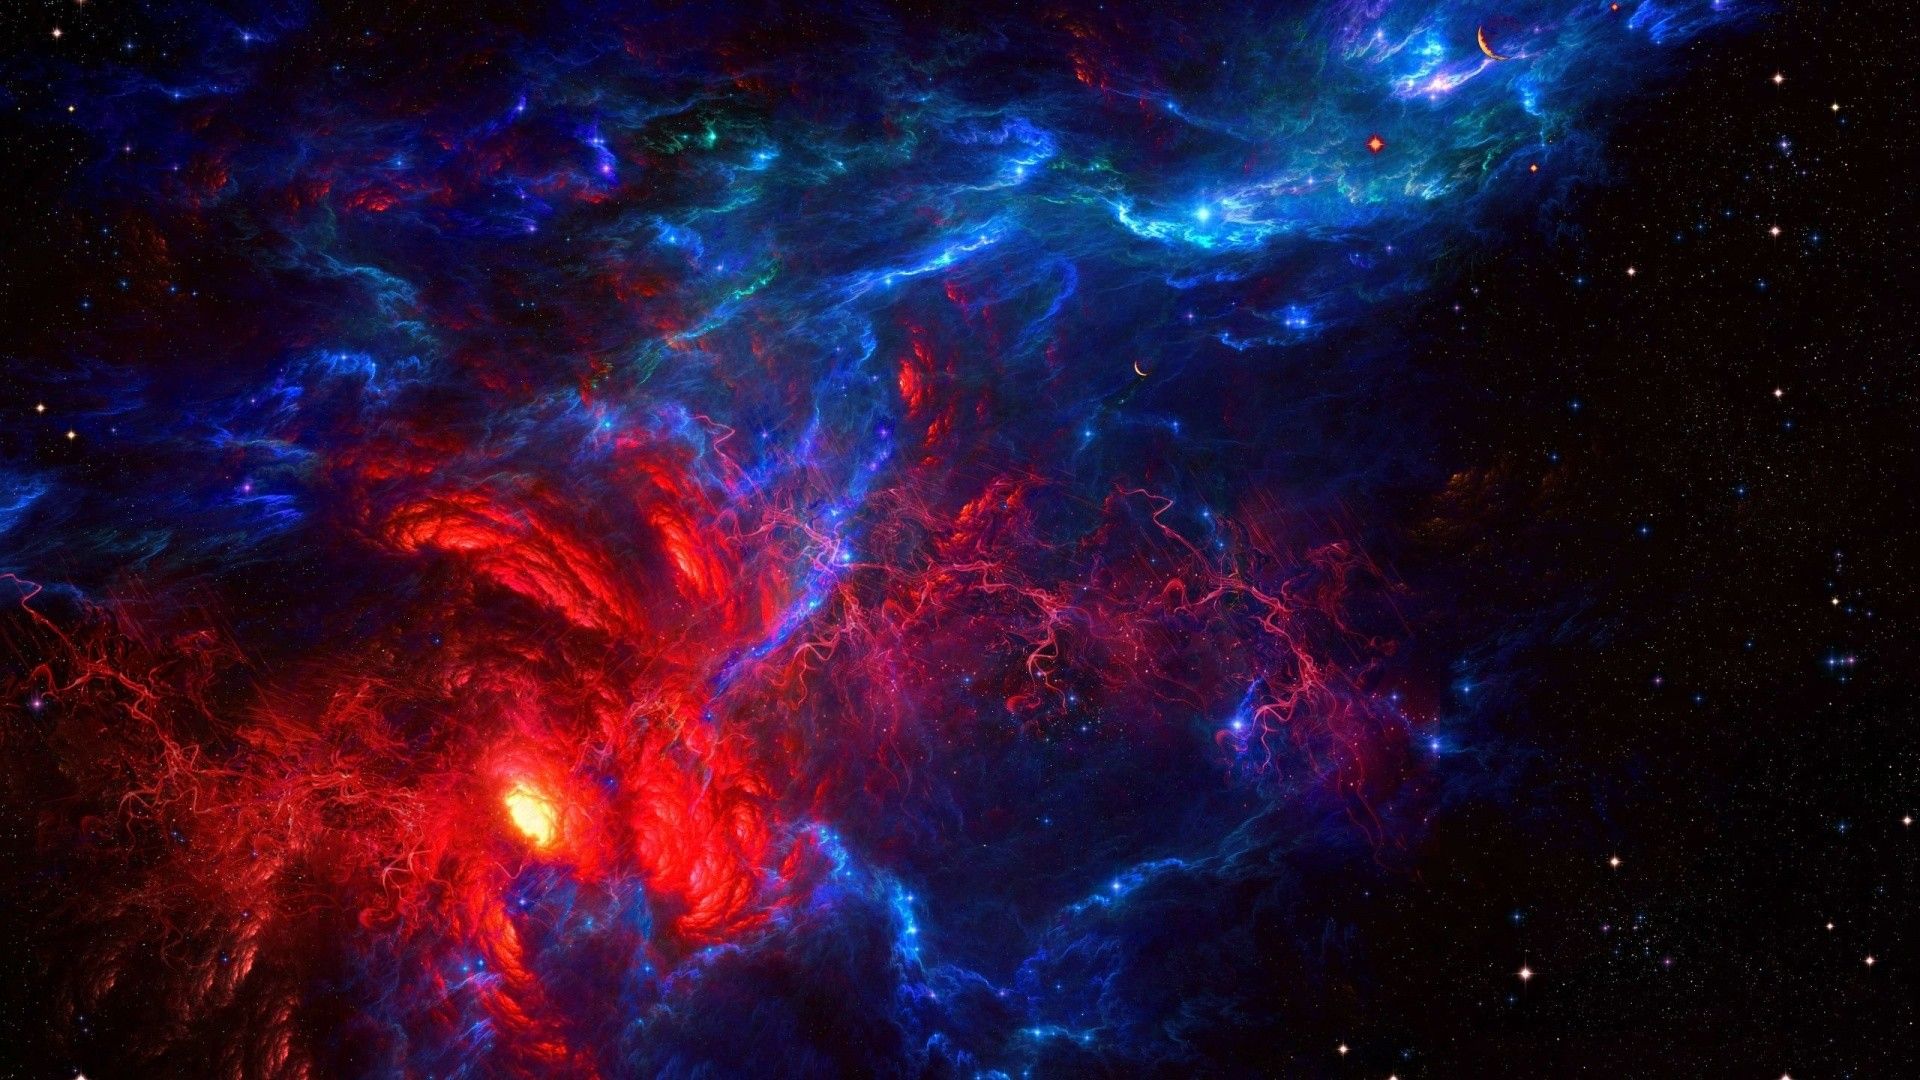 Những hình ảnh về thiên hà sẽ khiến bạn lạc vào một cuộc phiêu lưu đầy hứng khởi và bí ẩn. Hãy tưởng tượng mình đang đứng giữa những vì sao đang rực rỡ chiếu sáng.